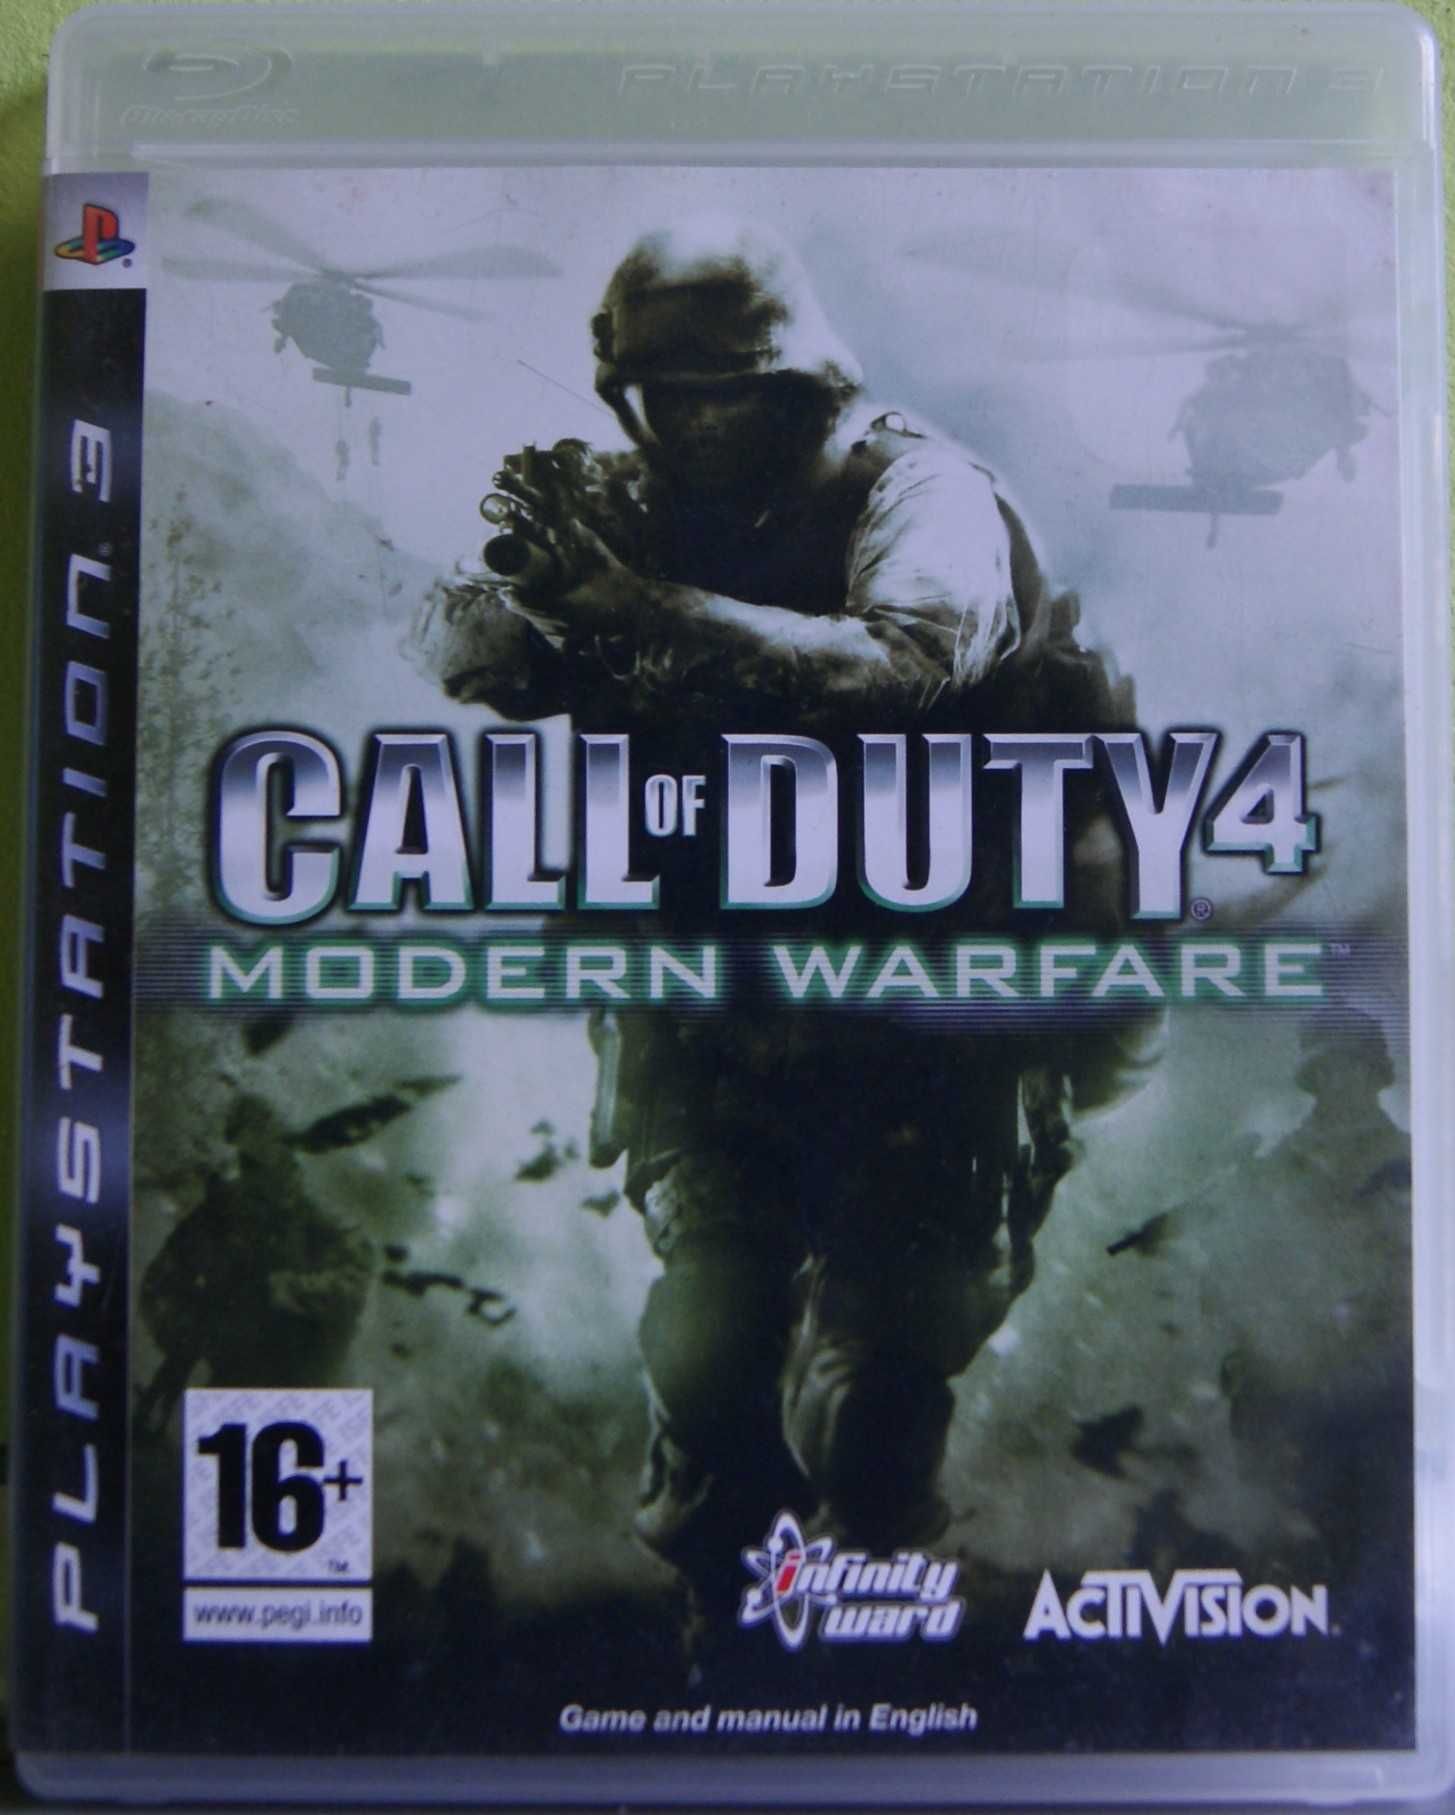 Call of Duty Modern Warfare Playstation 3 - Rybnik Play_gamE